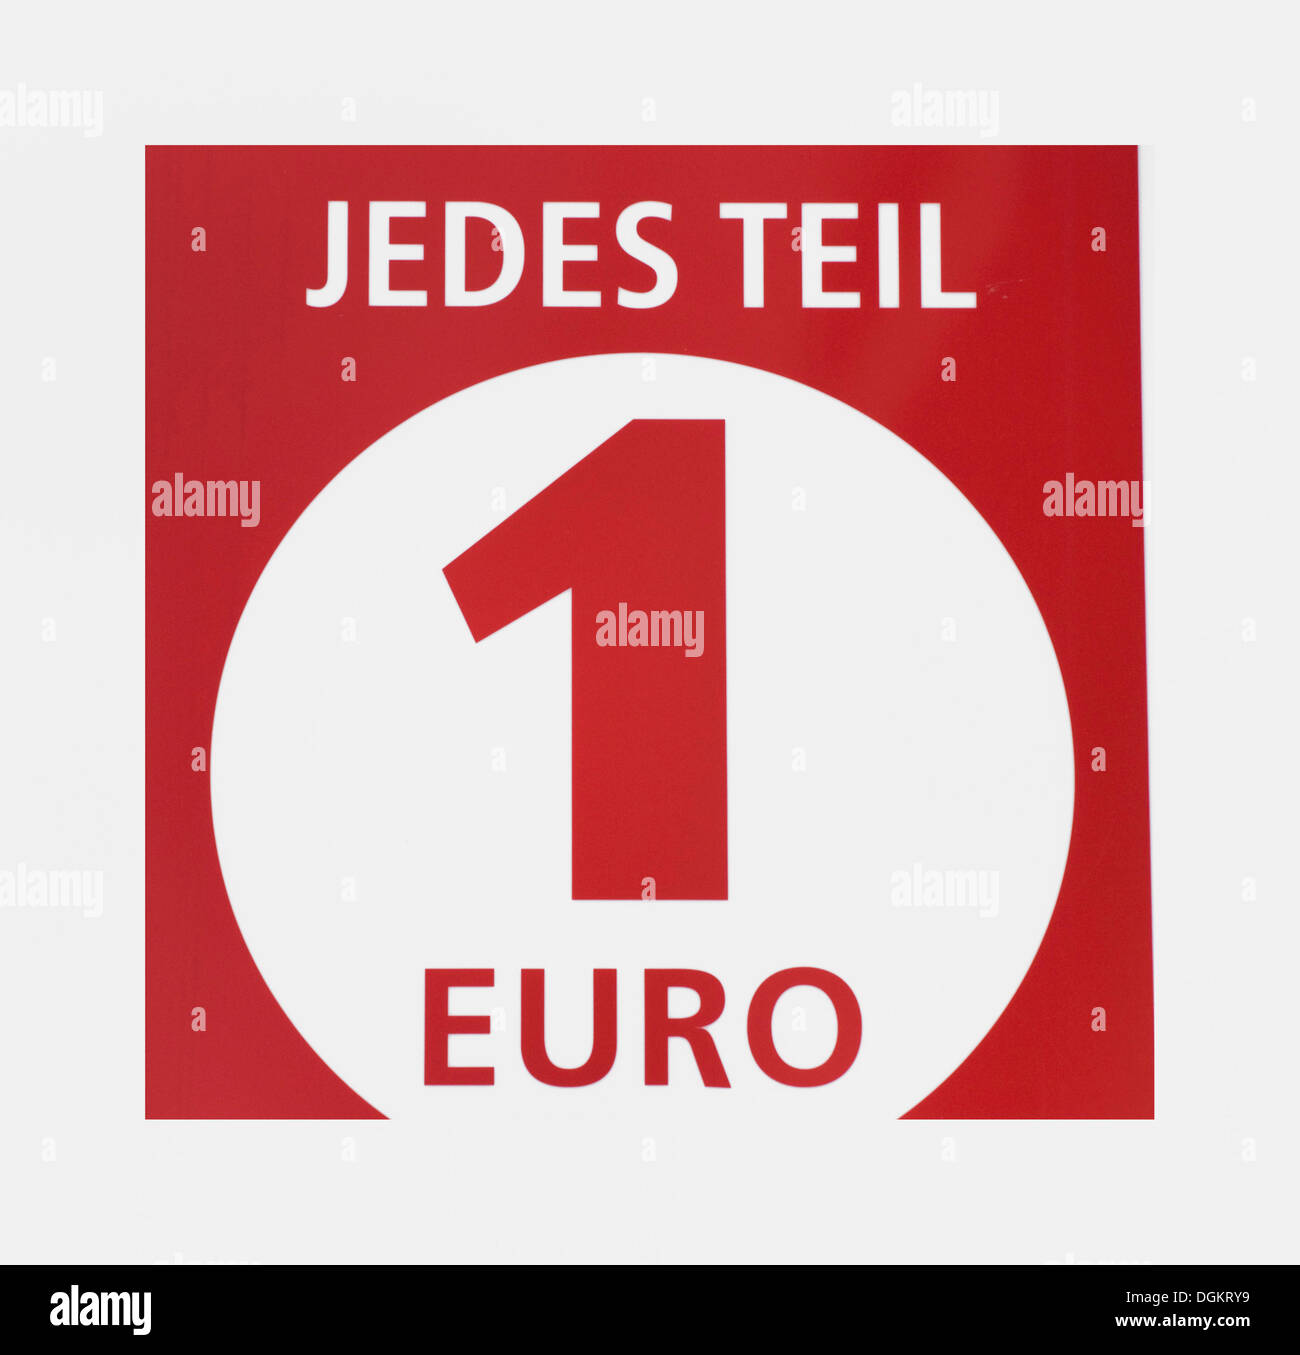 Jedes Teil 1 Euro, Tedesco per: ogni voce Euro 1, euro shop, sconto Foto Stock